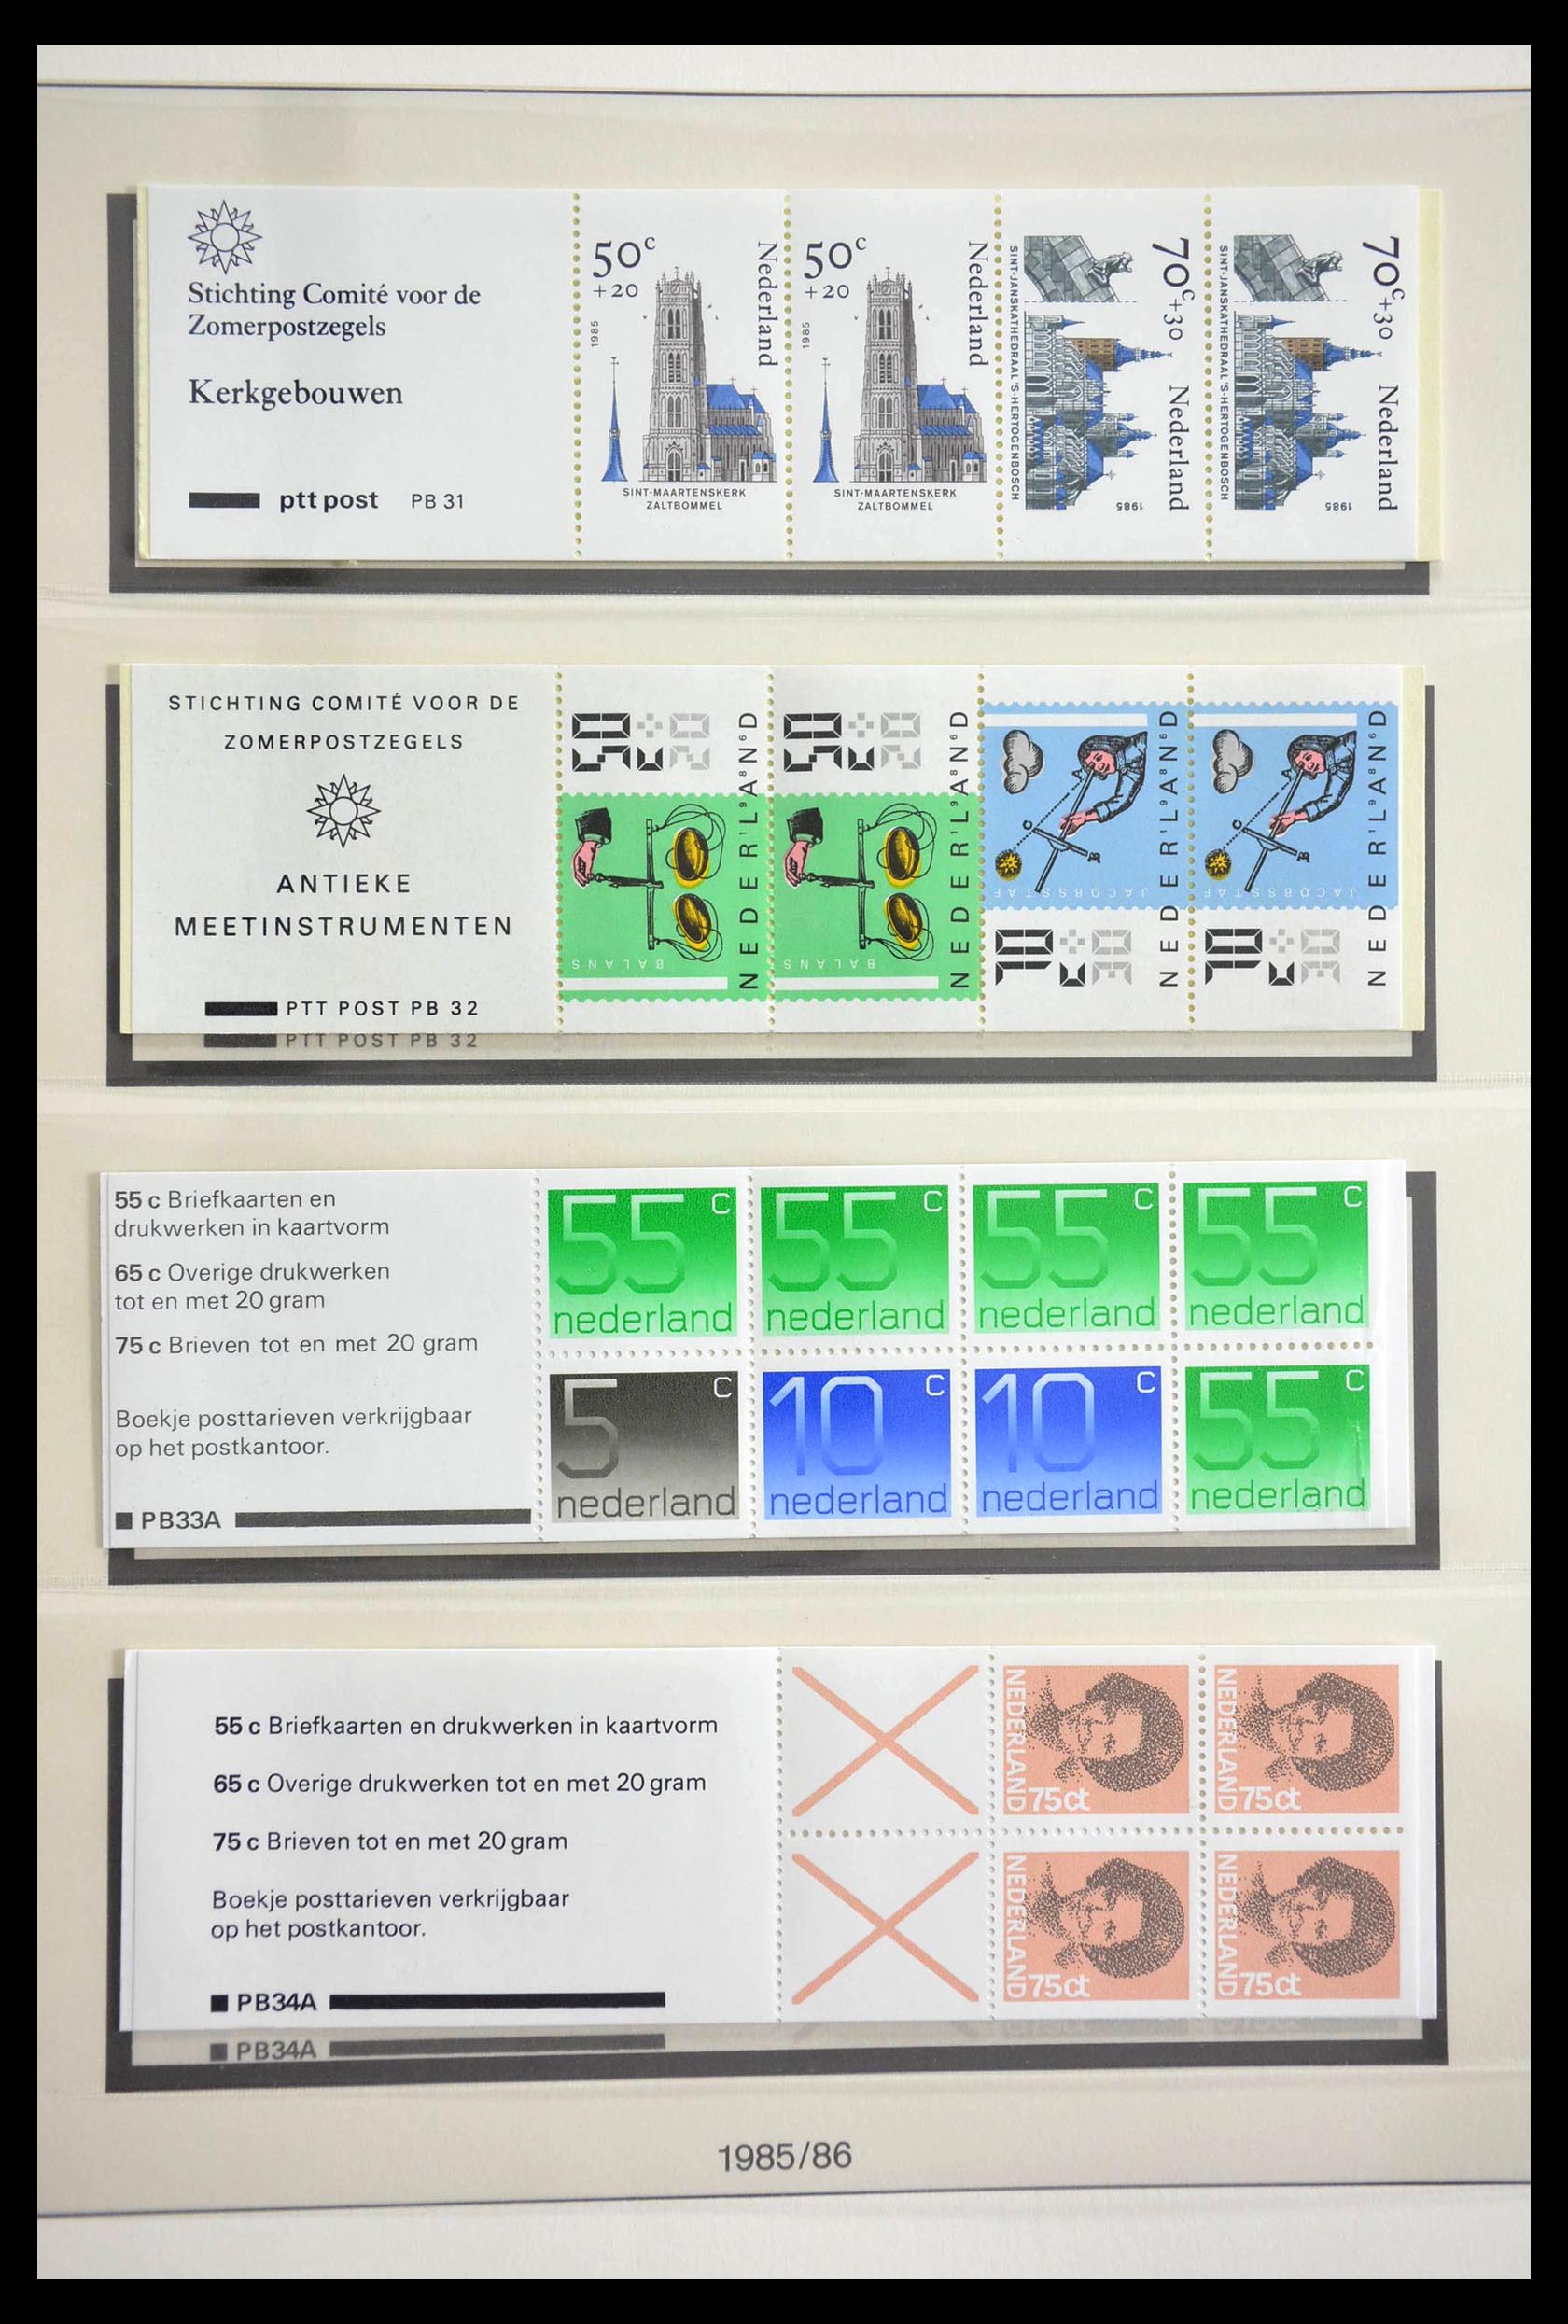 13085 019 - 13085 Netherlands stamp booklets 1964-1990.